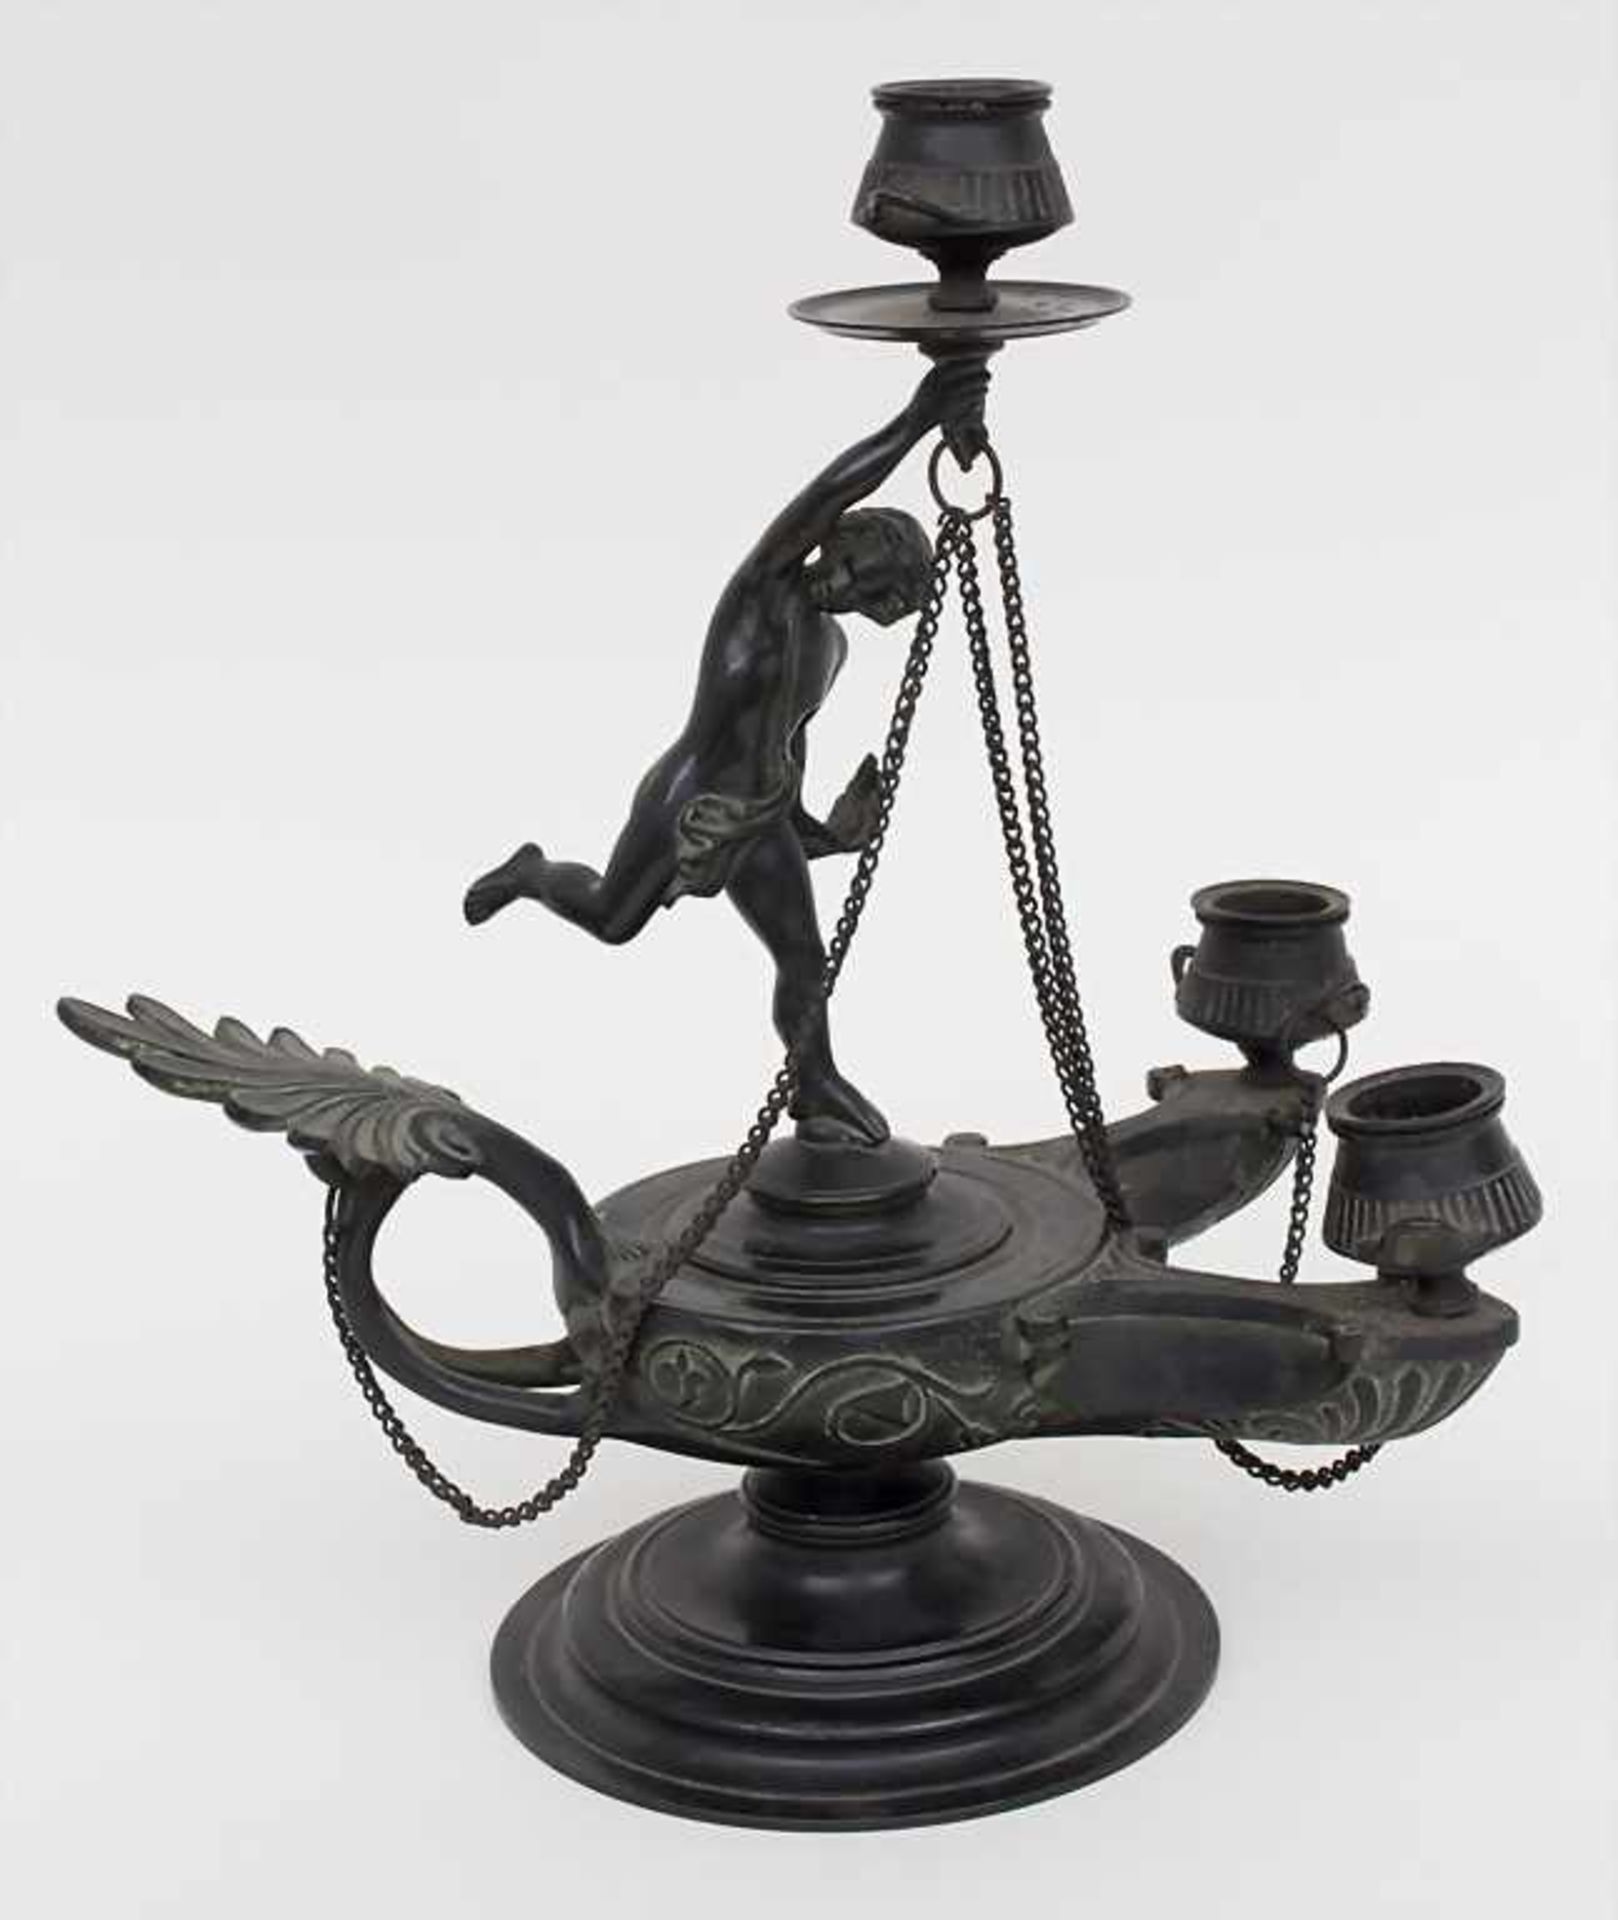 Jugendstil Figuren-Handleuchter / An Art Nouveau figural lamp, um 1900 Material: Bronze,